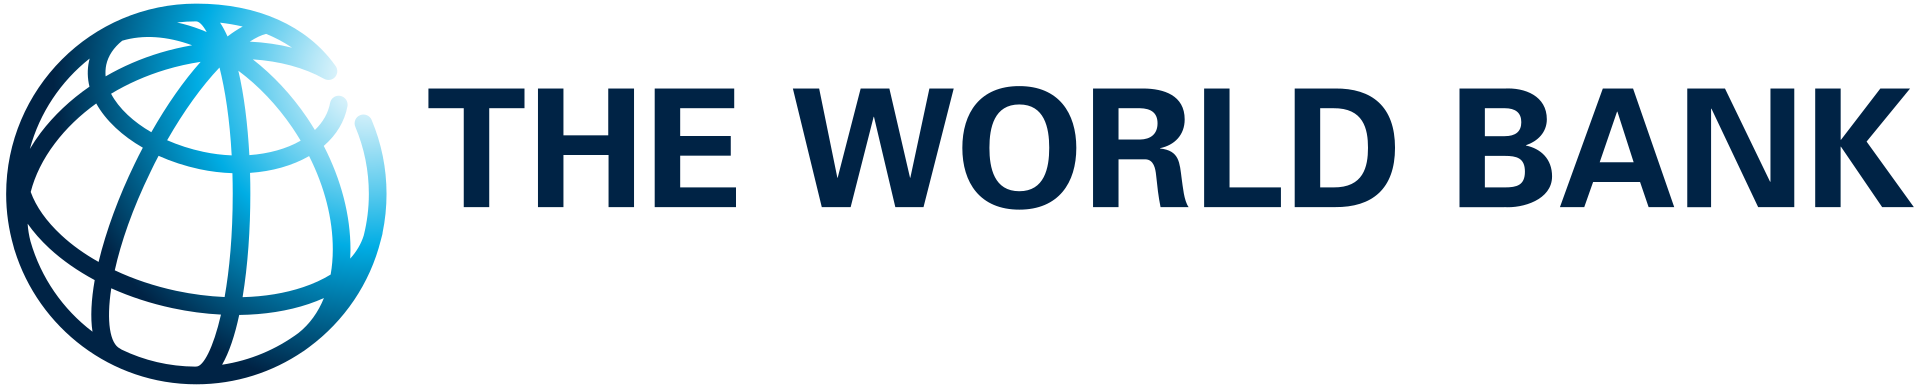 World Bank Group - Всемирный банк